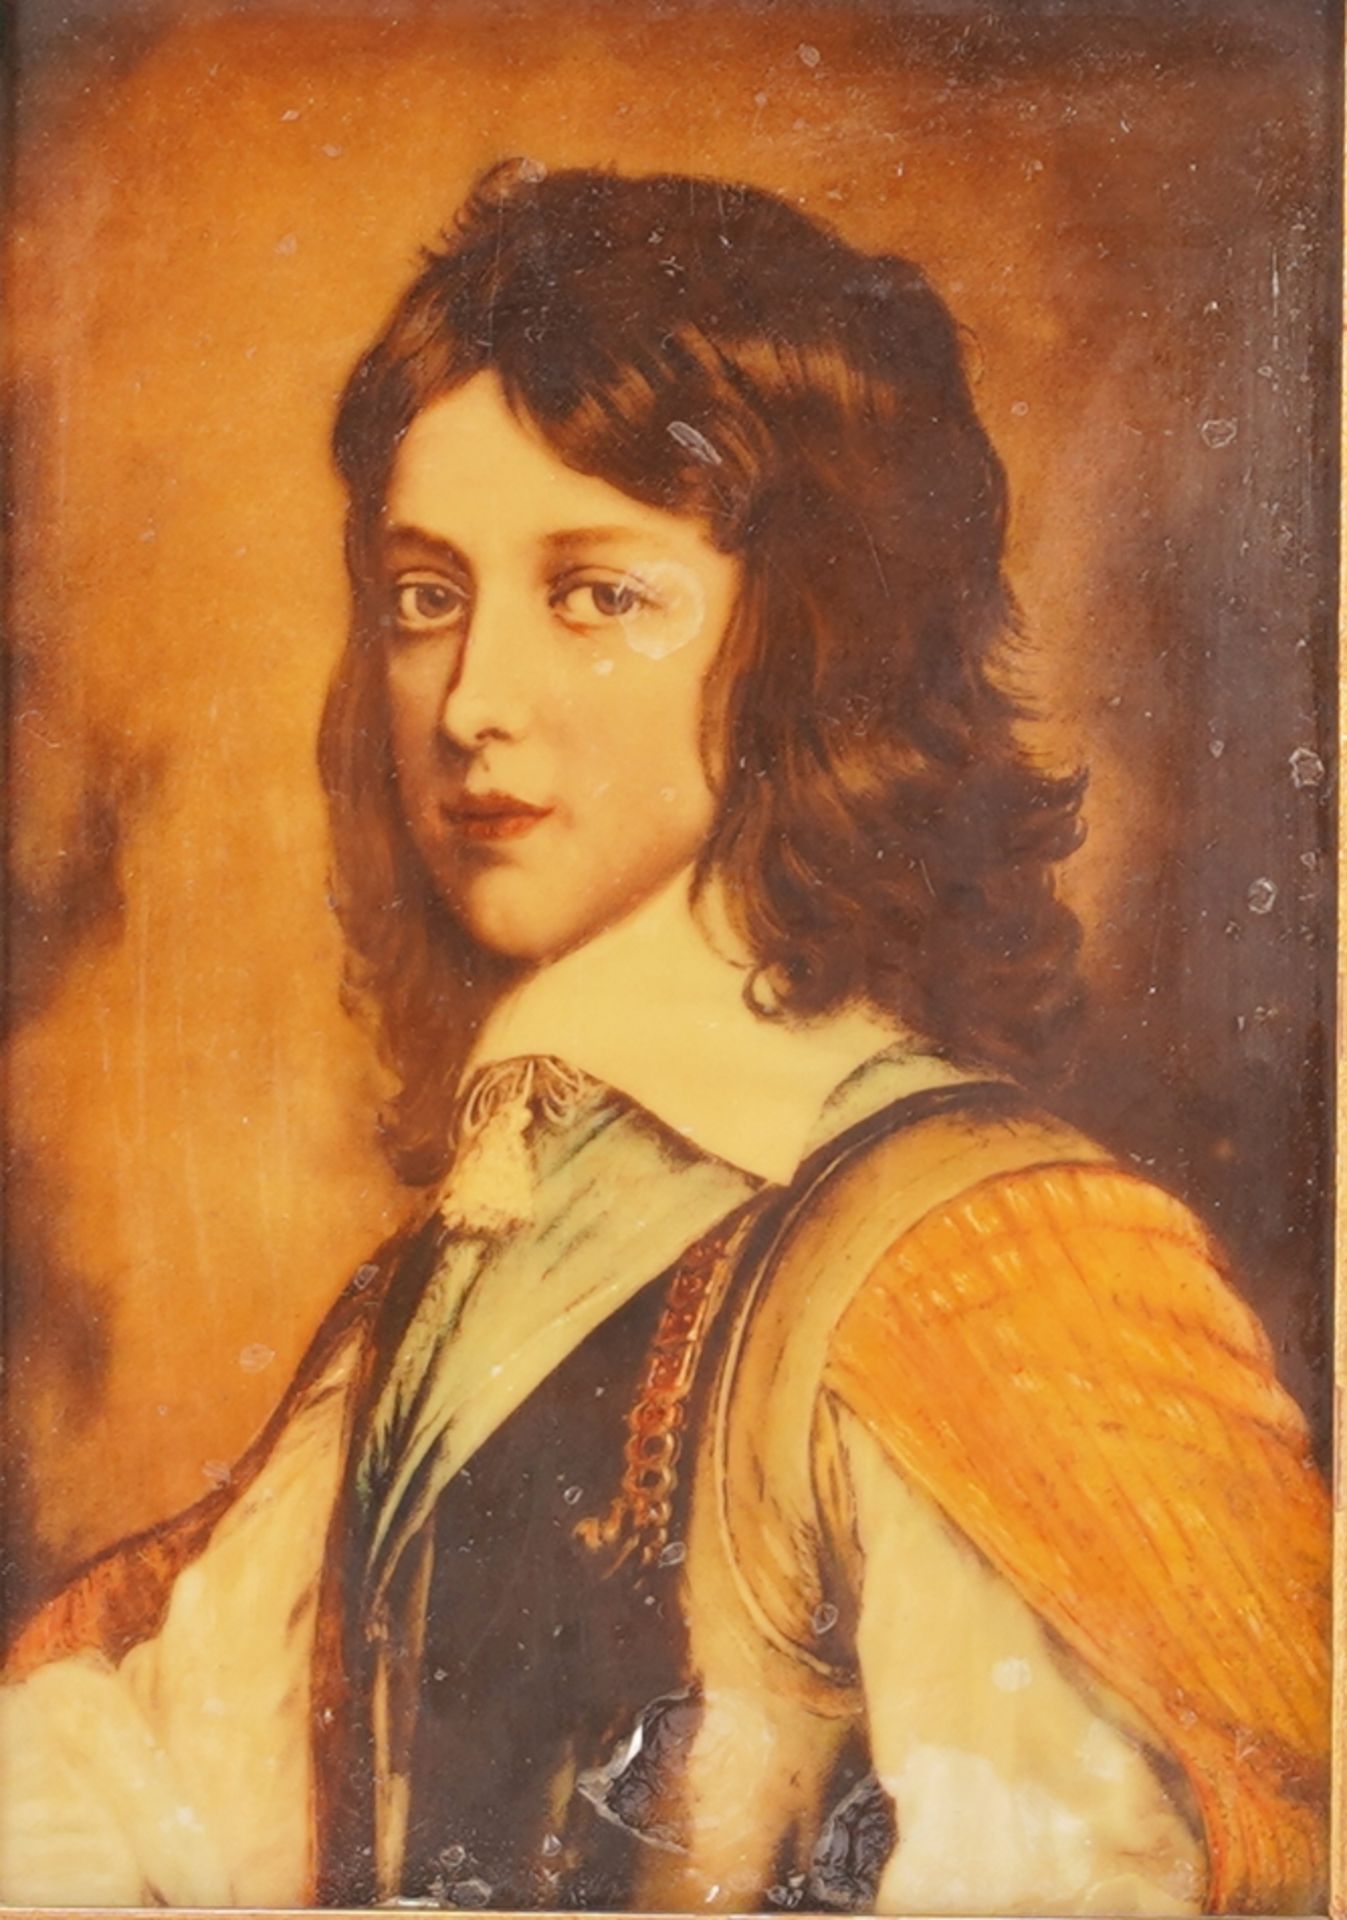 Portrait of William II of Orange